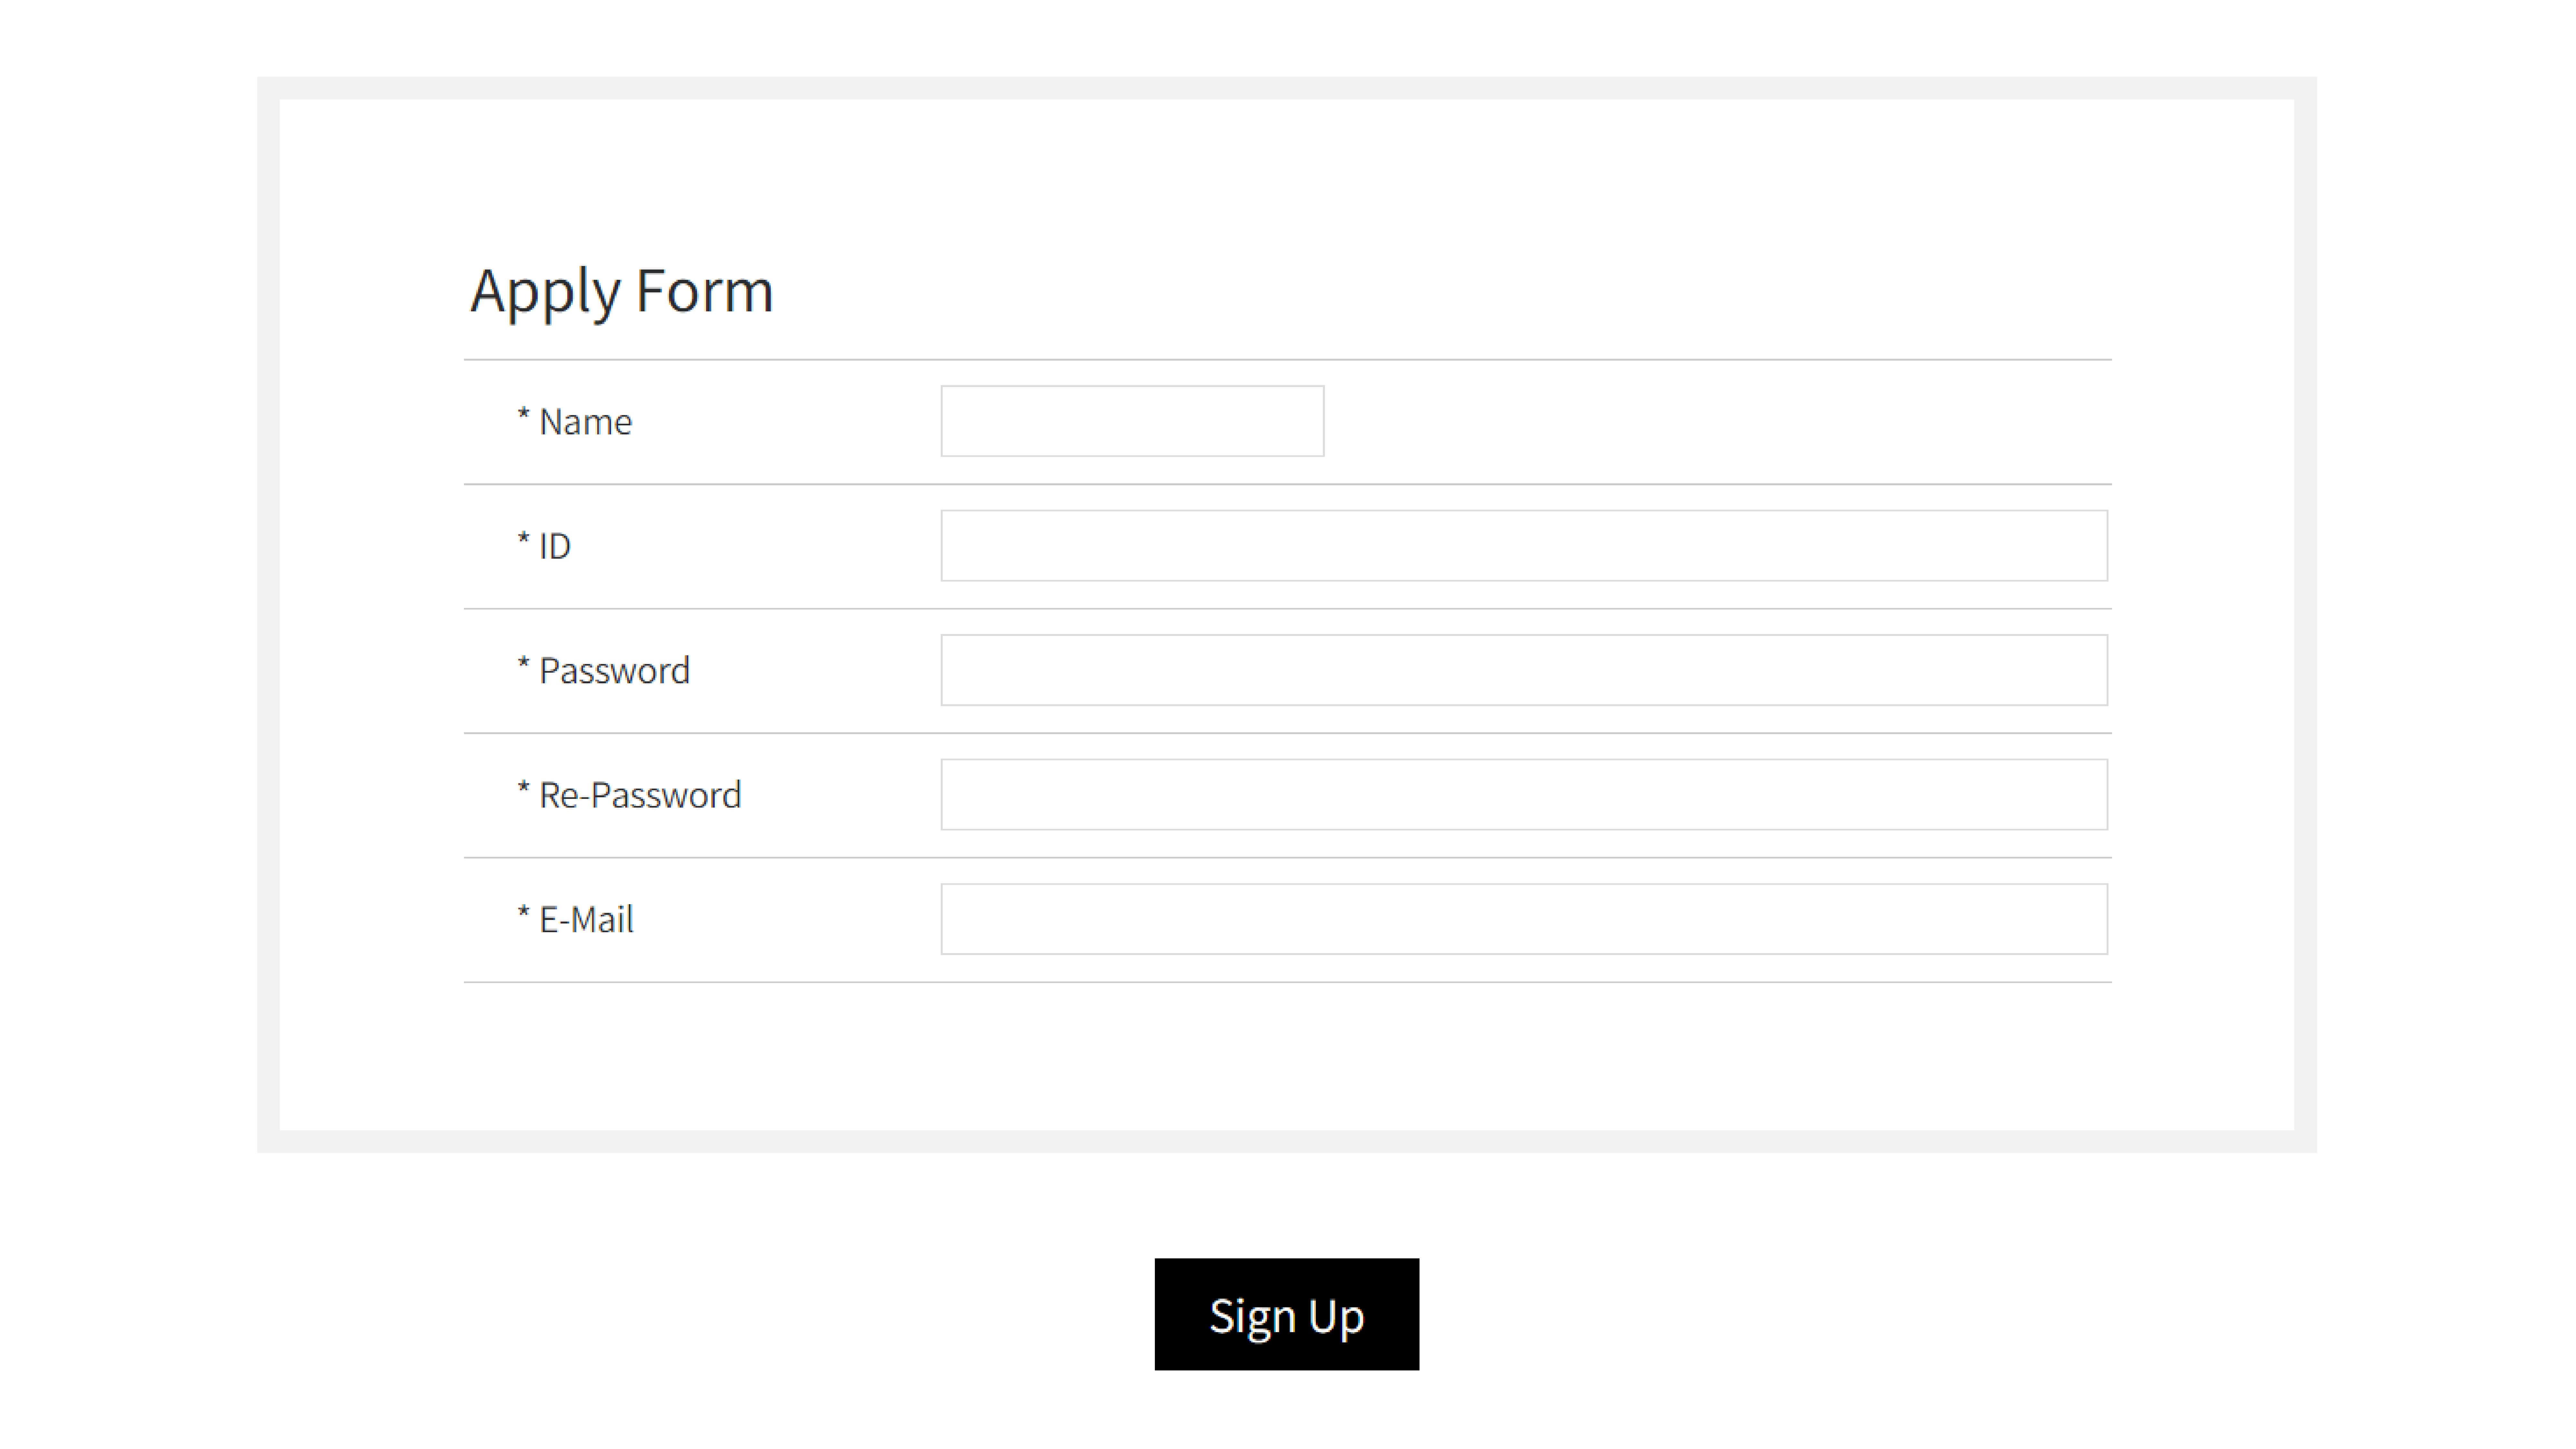 PASO 2
Para registrarte ingresa tus datos:
-Nombre
-Usuario
-Contraseña
-Correo
Y presiona SIGN UP.